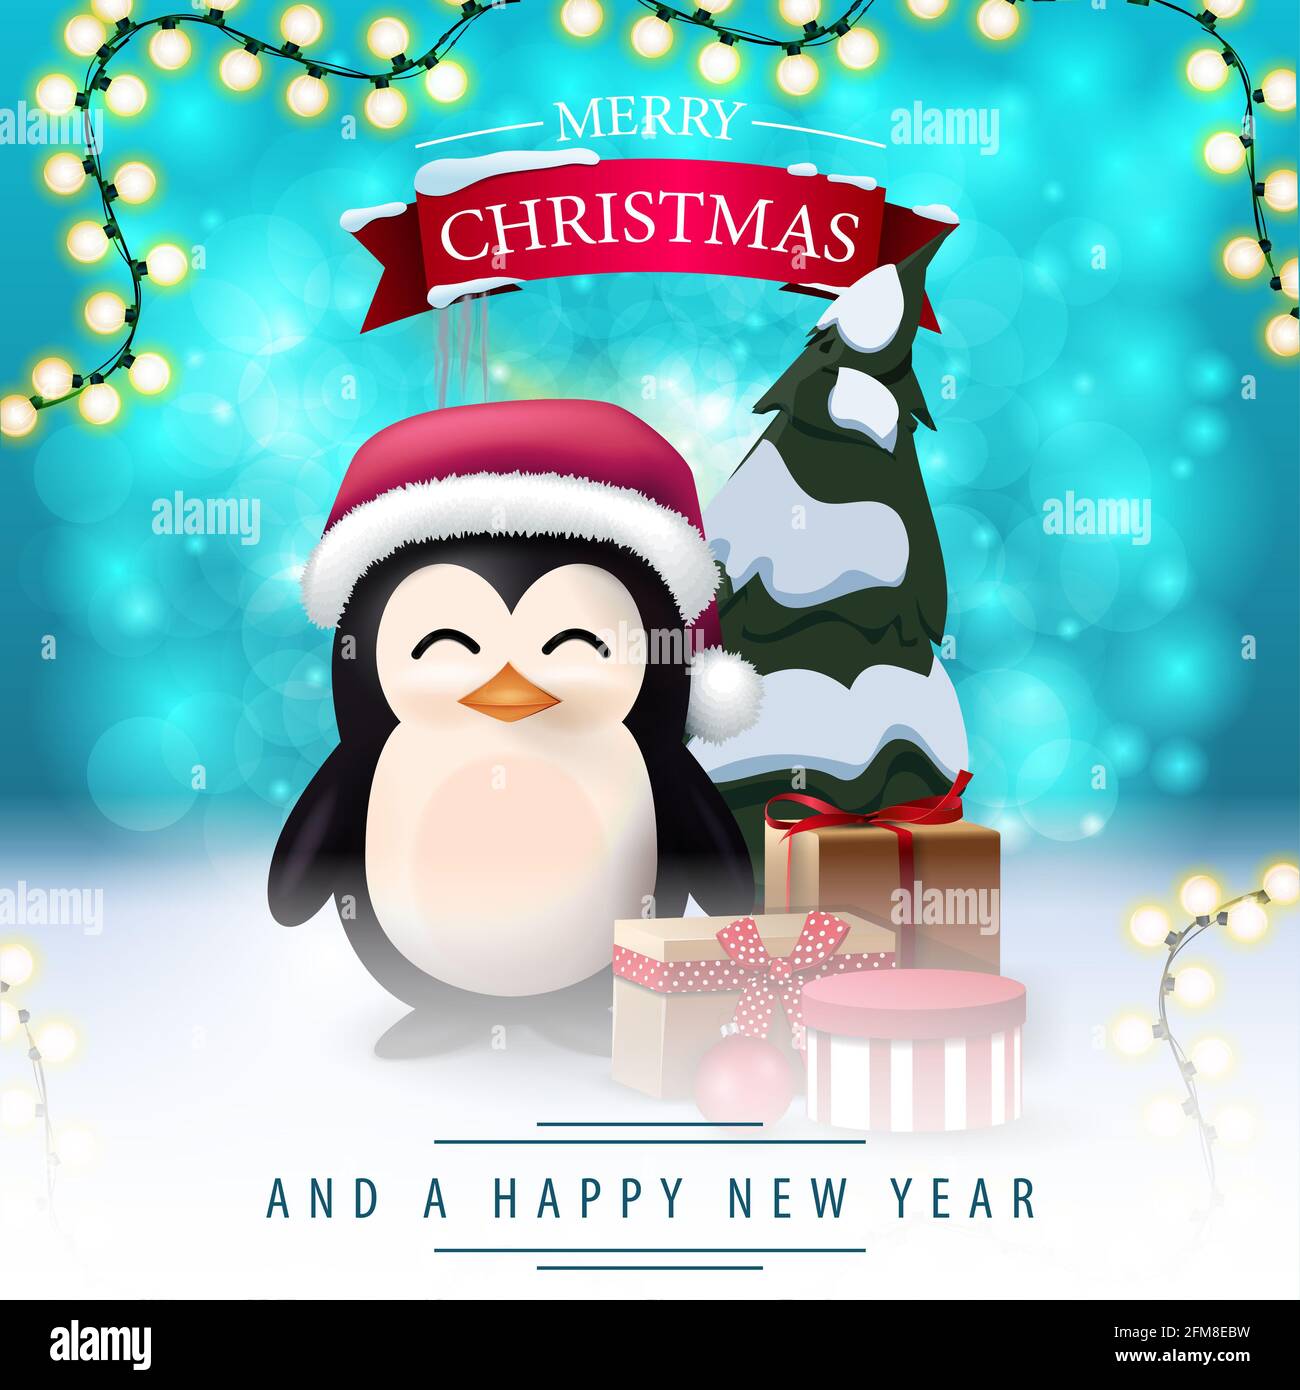 Joyeux Noël et bonne année, carte postale carrée avec fond bleu flou, cadre de guirlande et pingouin en chapeau de Père Noël avec cadeaux Banque D'Images